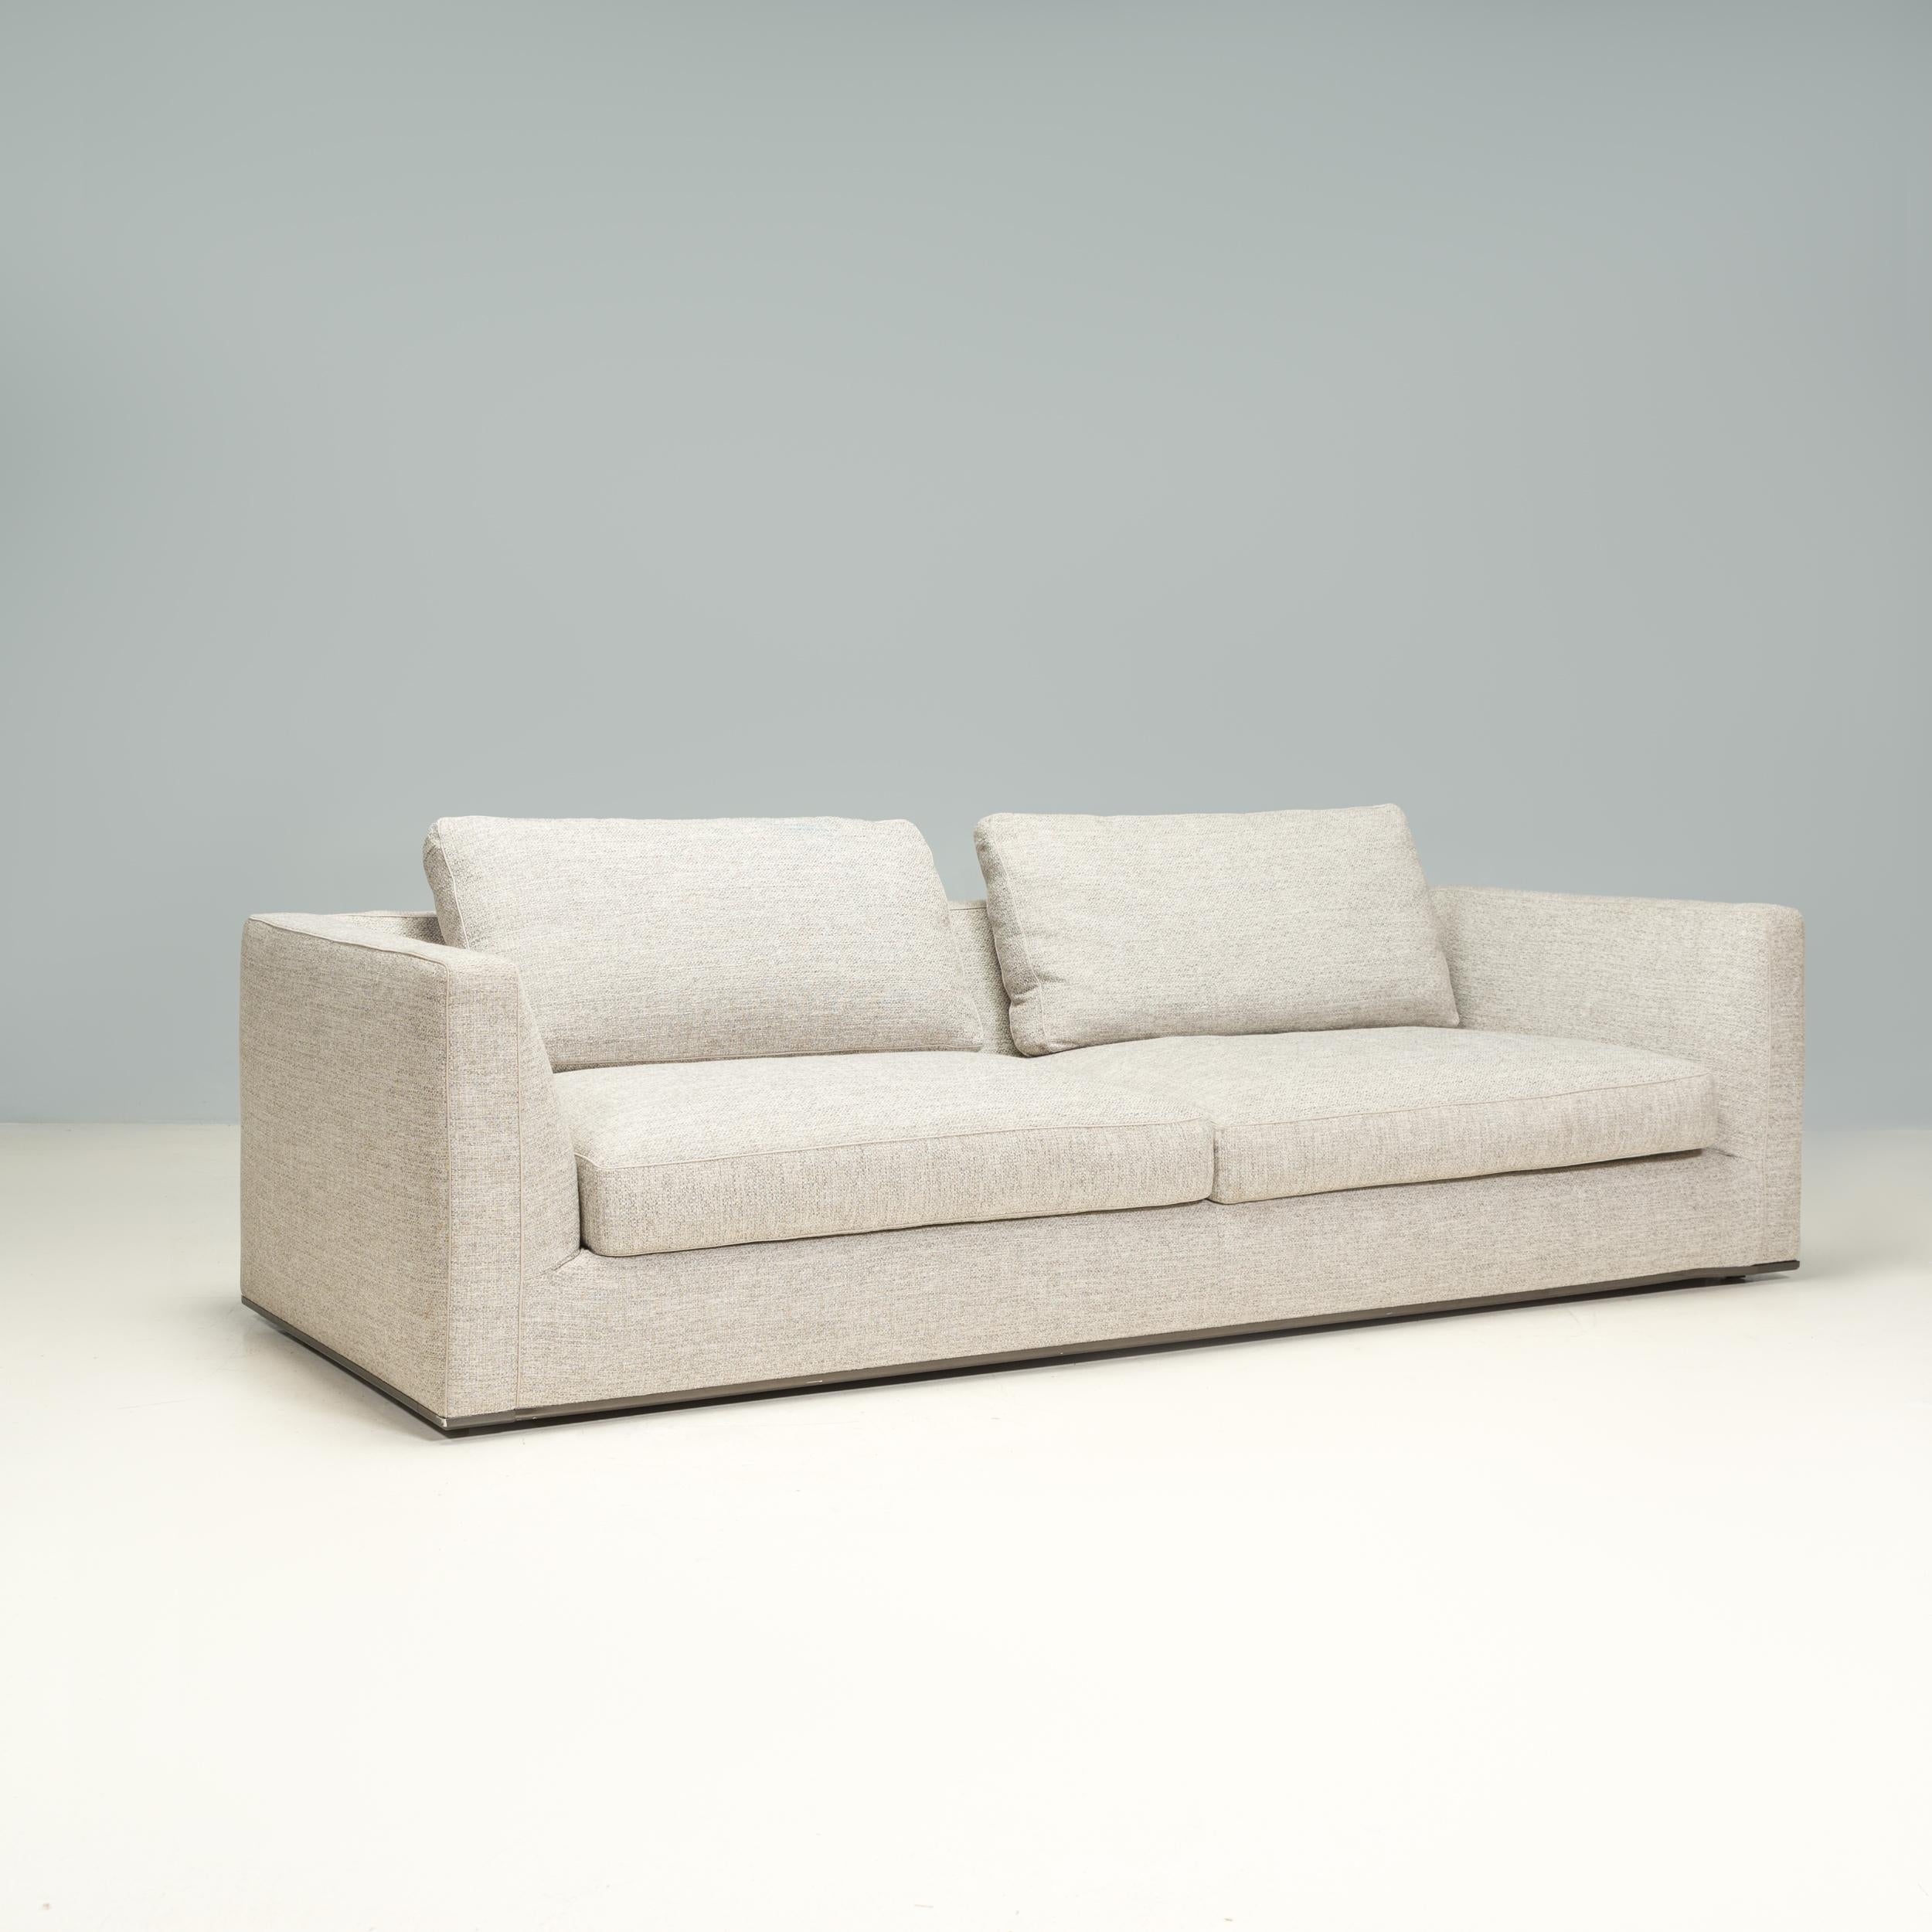 Das Sofa Richard wurde ursprünglich von Antonio Citterio für B&B Italia im Jahr 2016 entworfen und ist ein fantastisches Beispiel für zeitgenössisches italienisches Design.

Das zweisitzige Sofa besteht aus einem Stahlrohrrahmen und hat eine